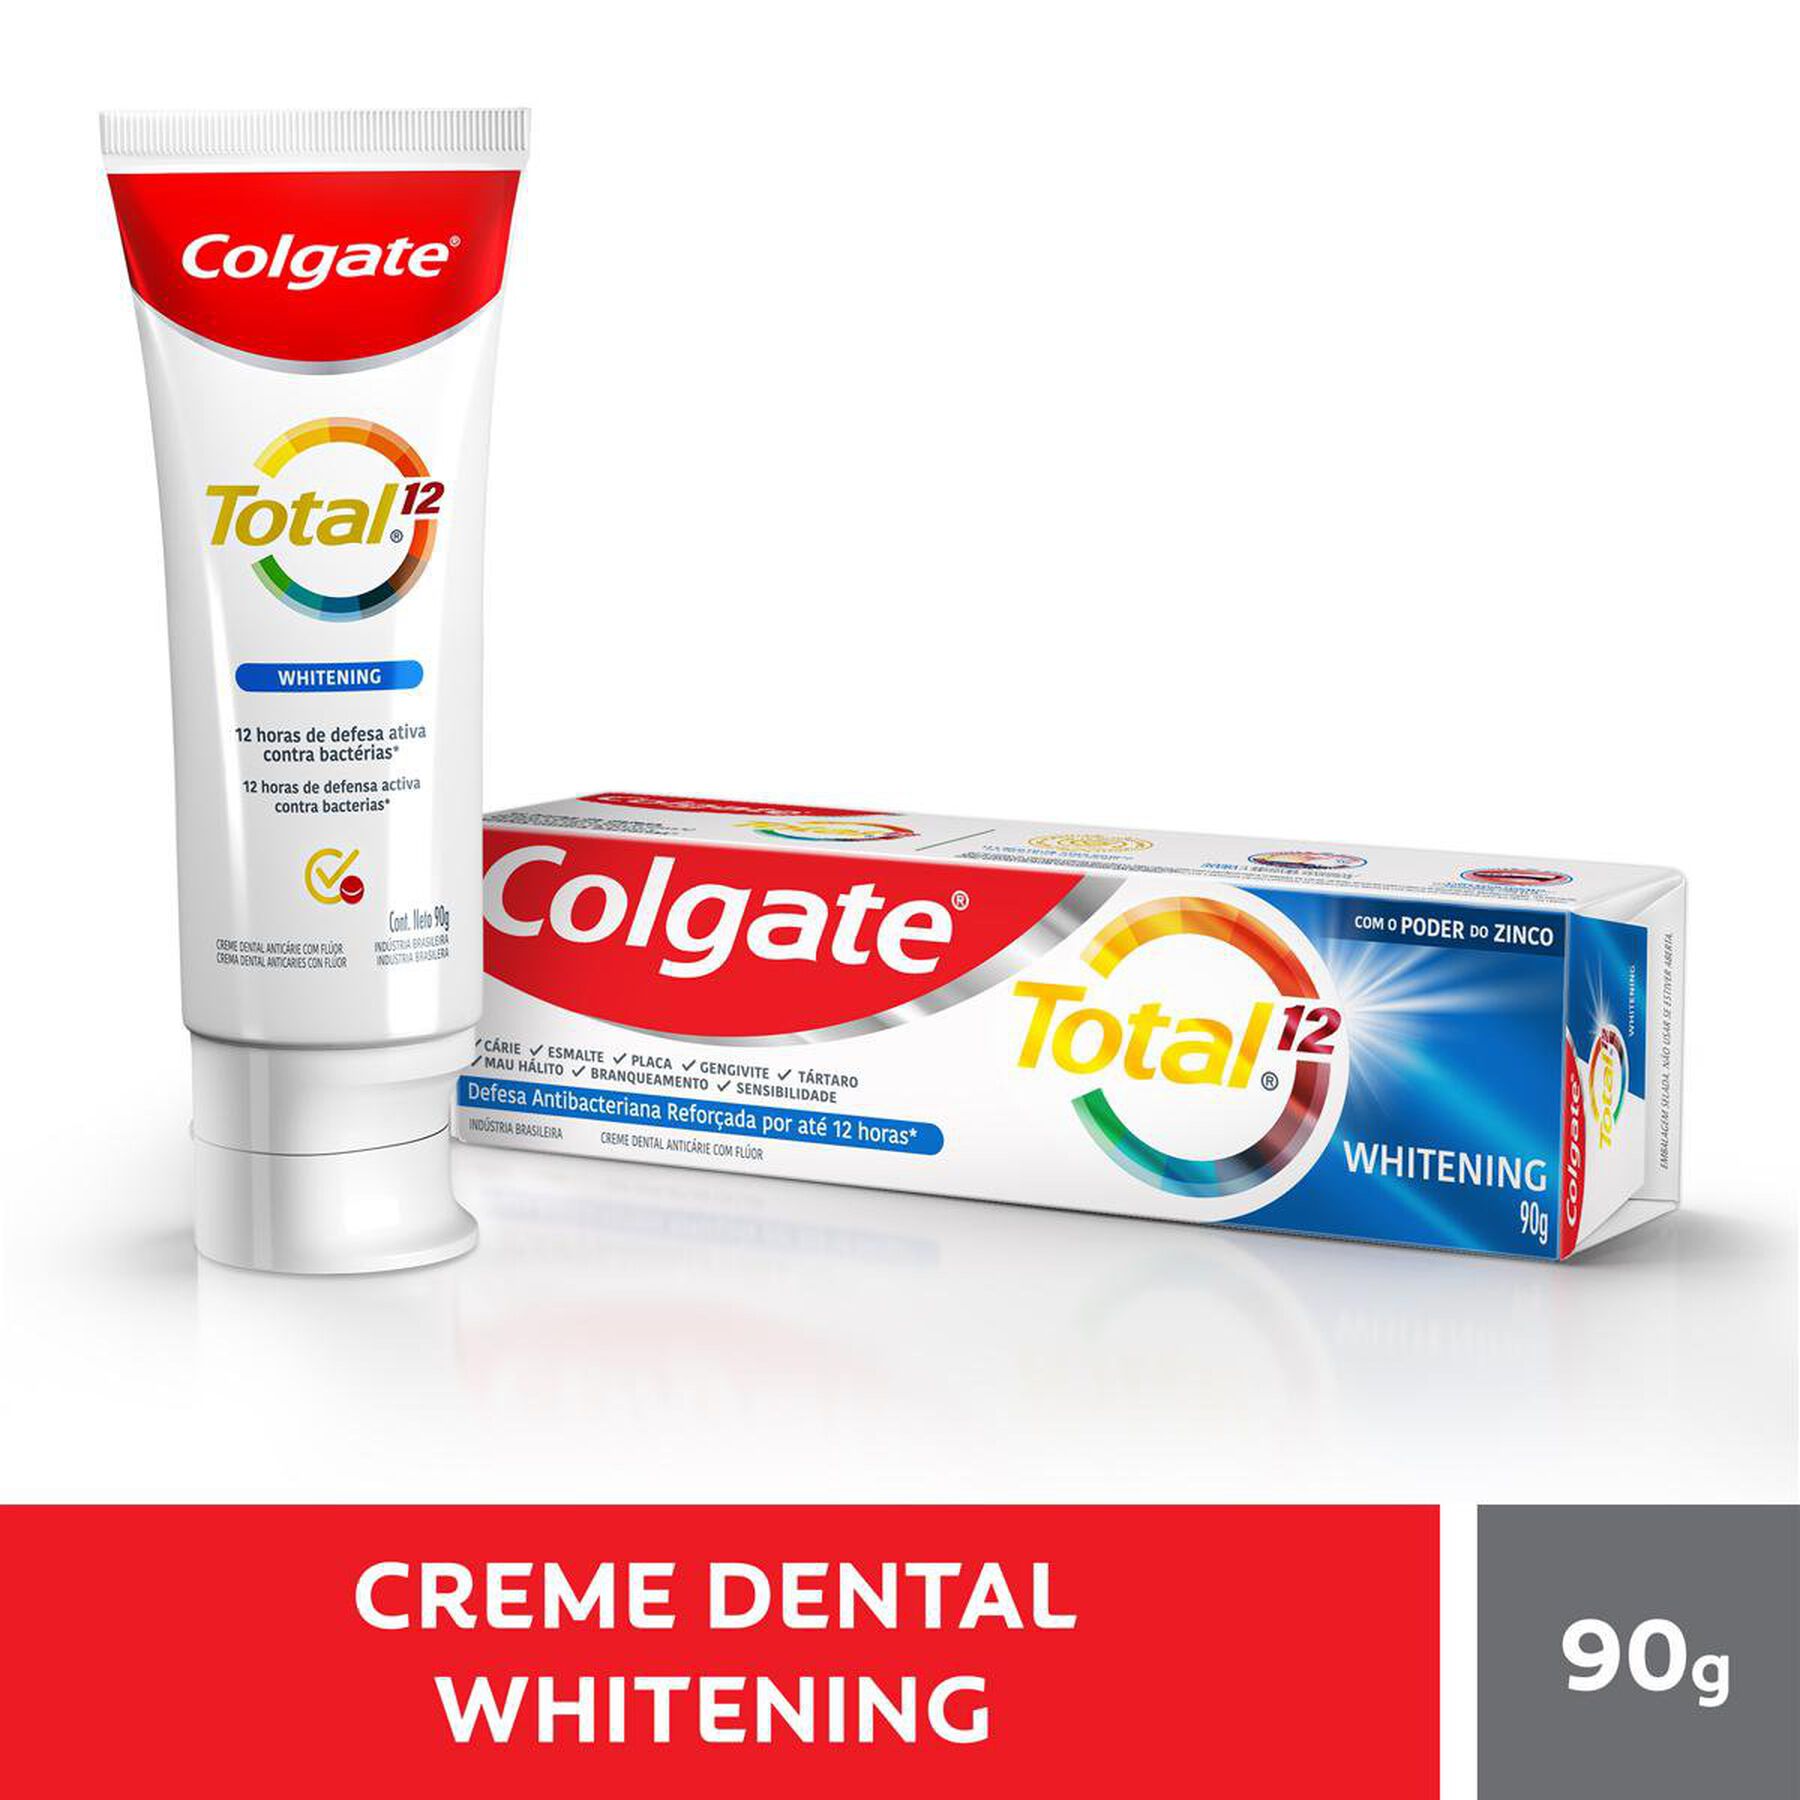 Creme Dental Para Branqueamento Colgate Total 12 Whitening 90g